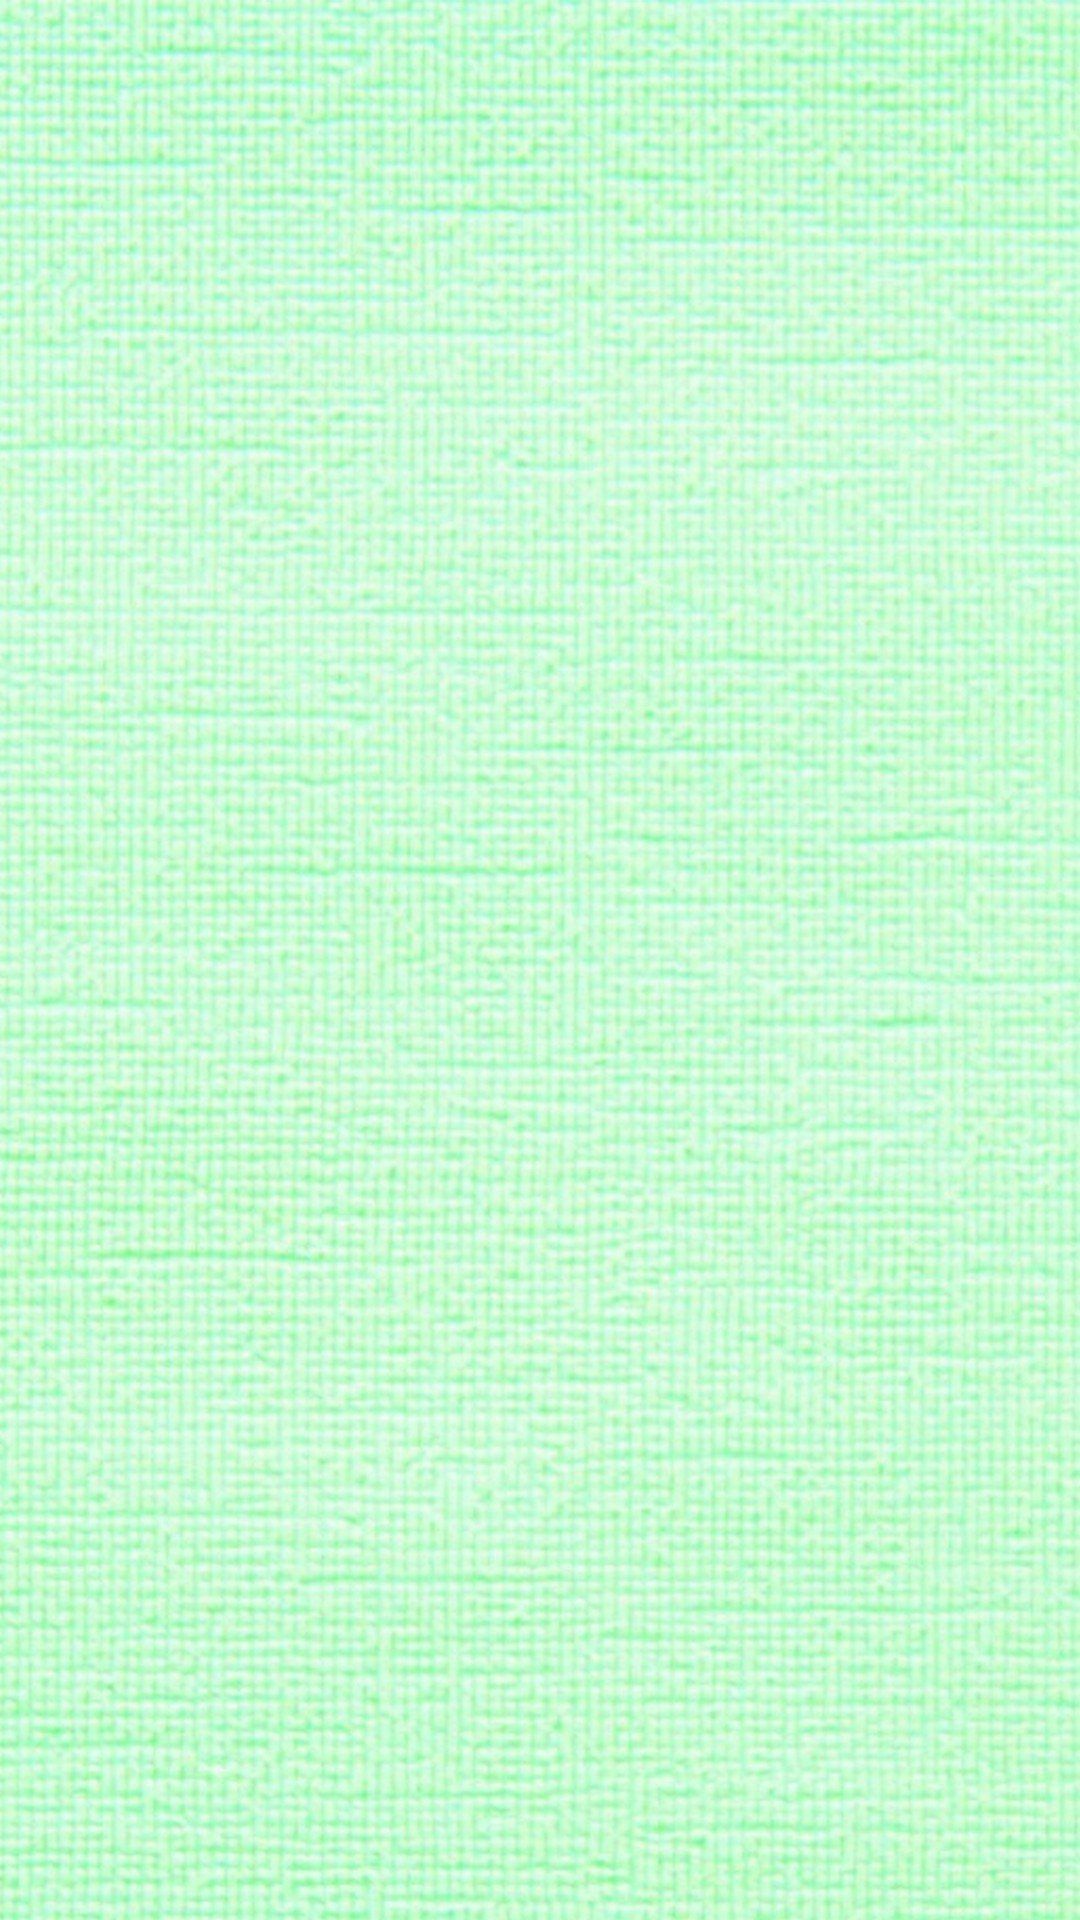 Mint Green iPad Wallpaper